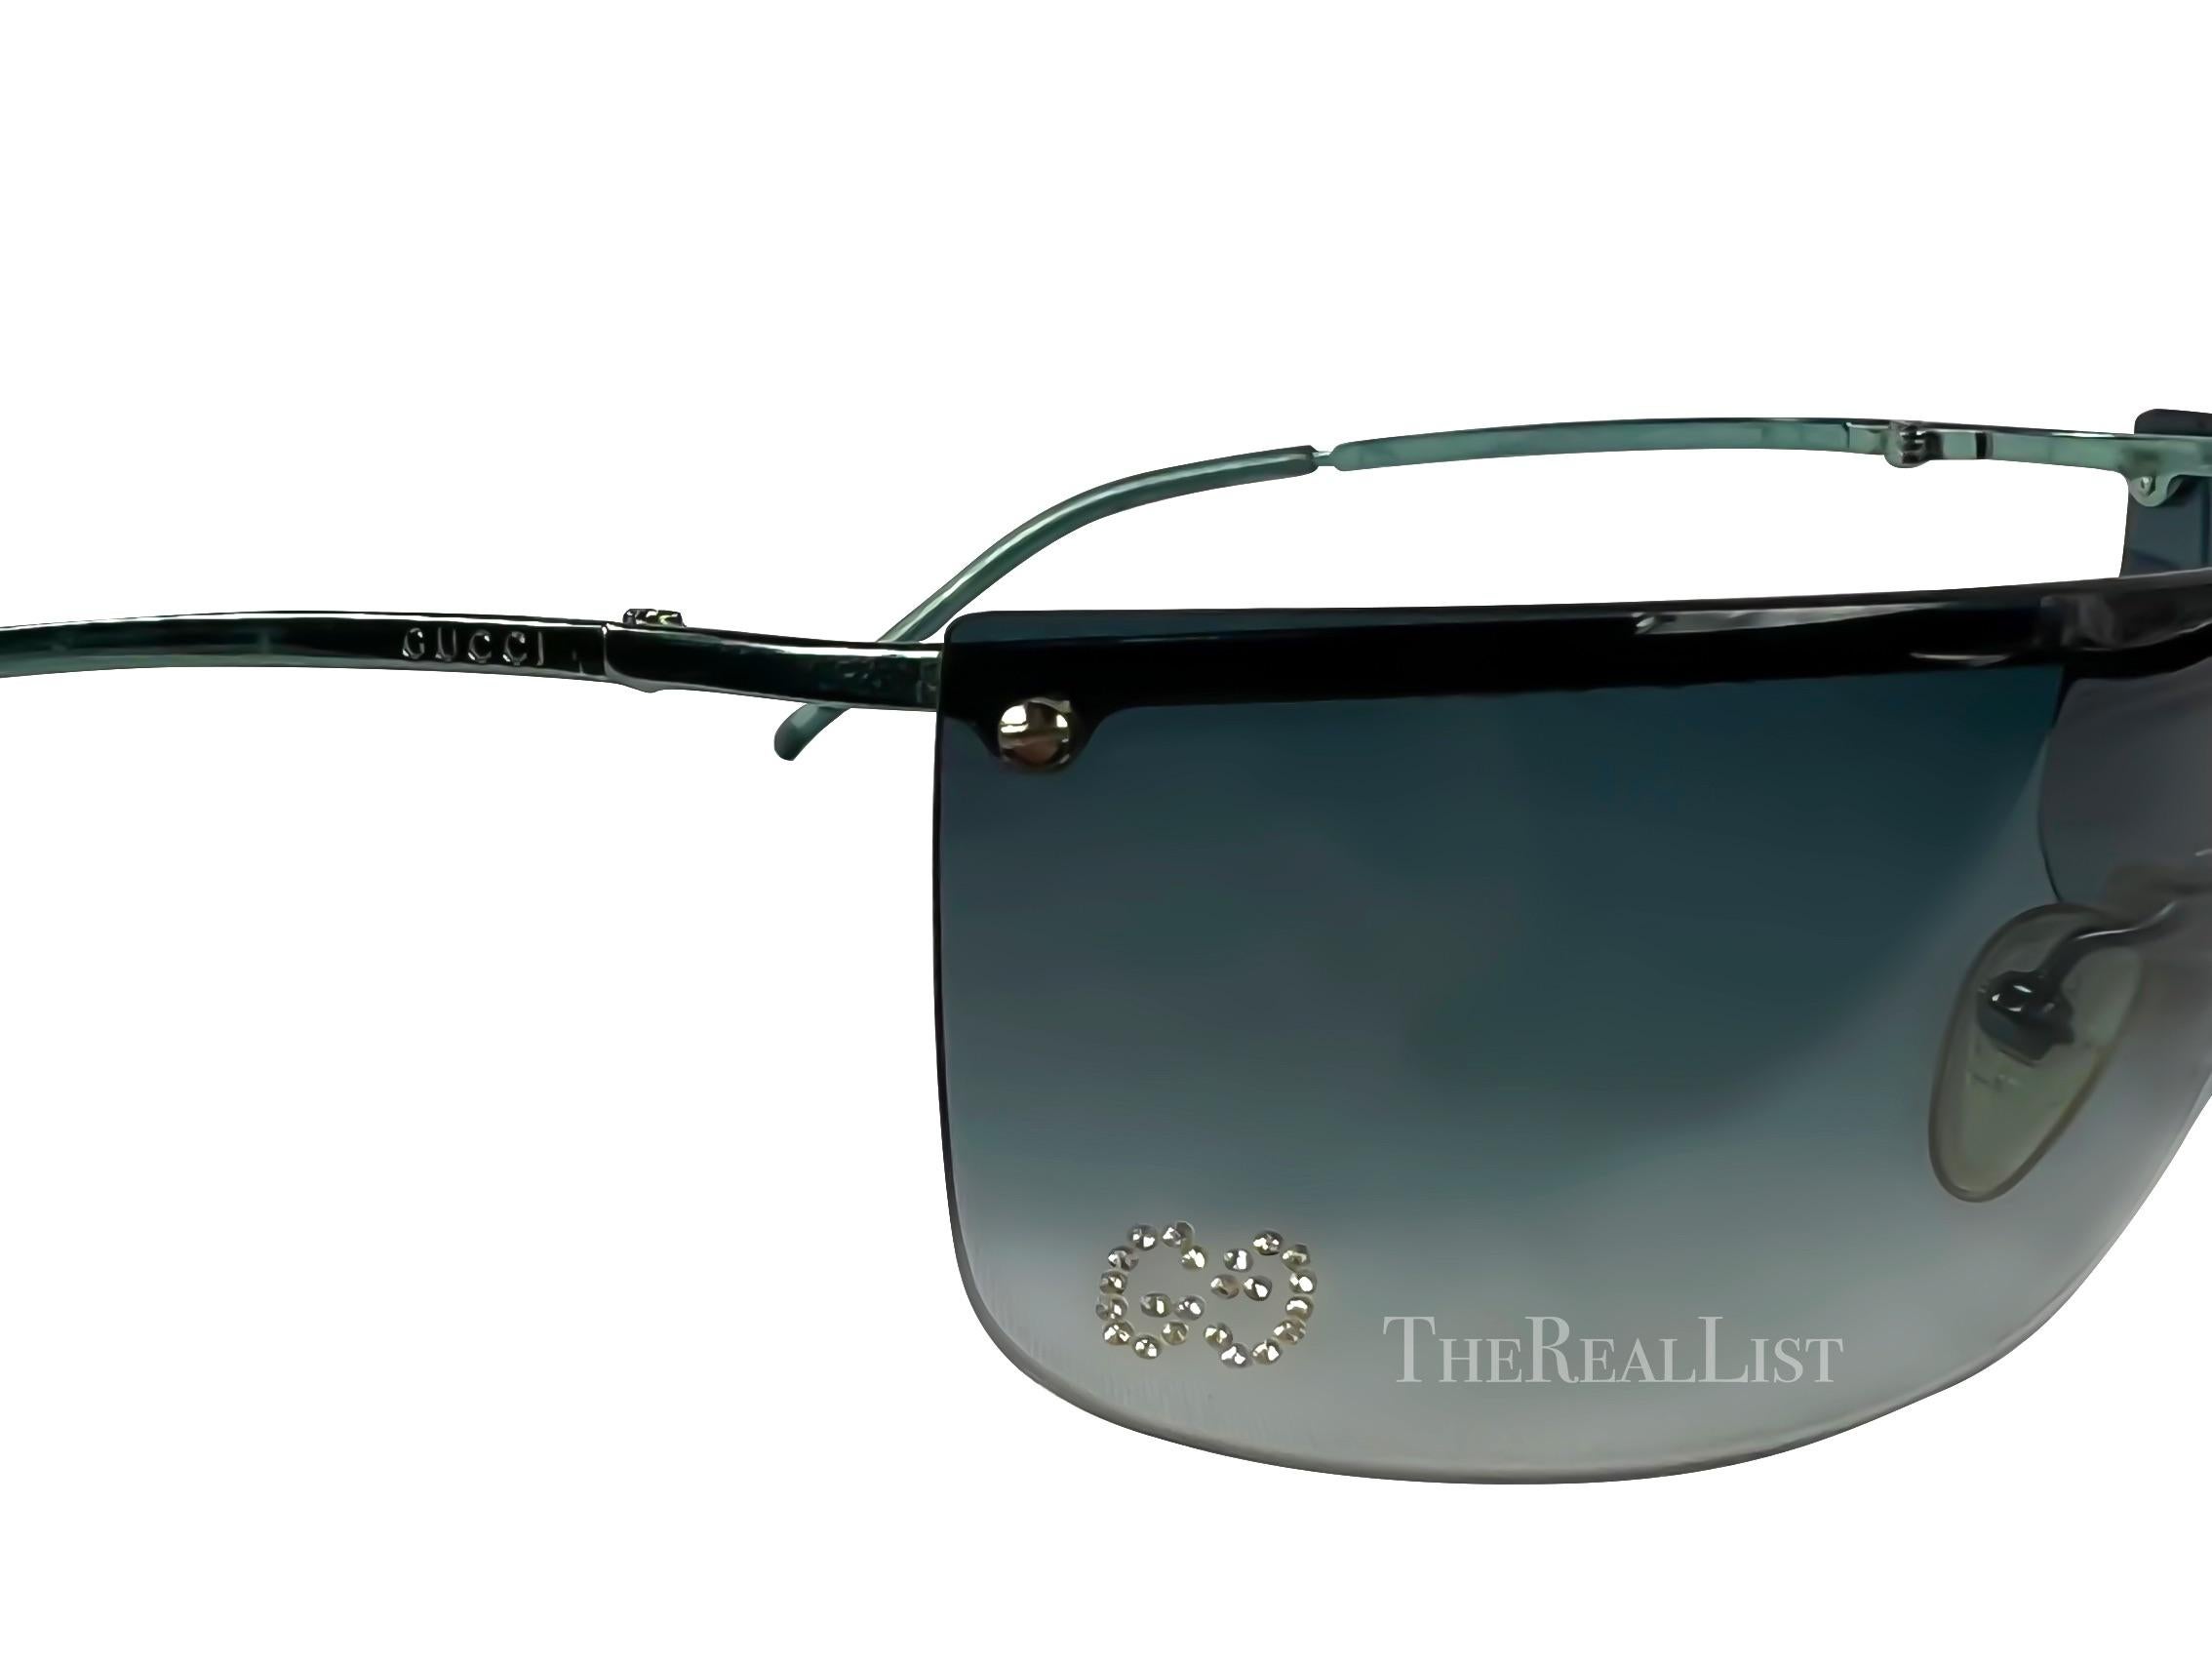 Voici une fabuleuse paire de lunettes de soleil Gucci sans monture, de couleur golf, conçue par Tom Ford. Avec leur attrait intemporel, ces lunettes de soleil ultra-chic sont un complément indispensable à toute collection. Le design sans monture est